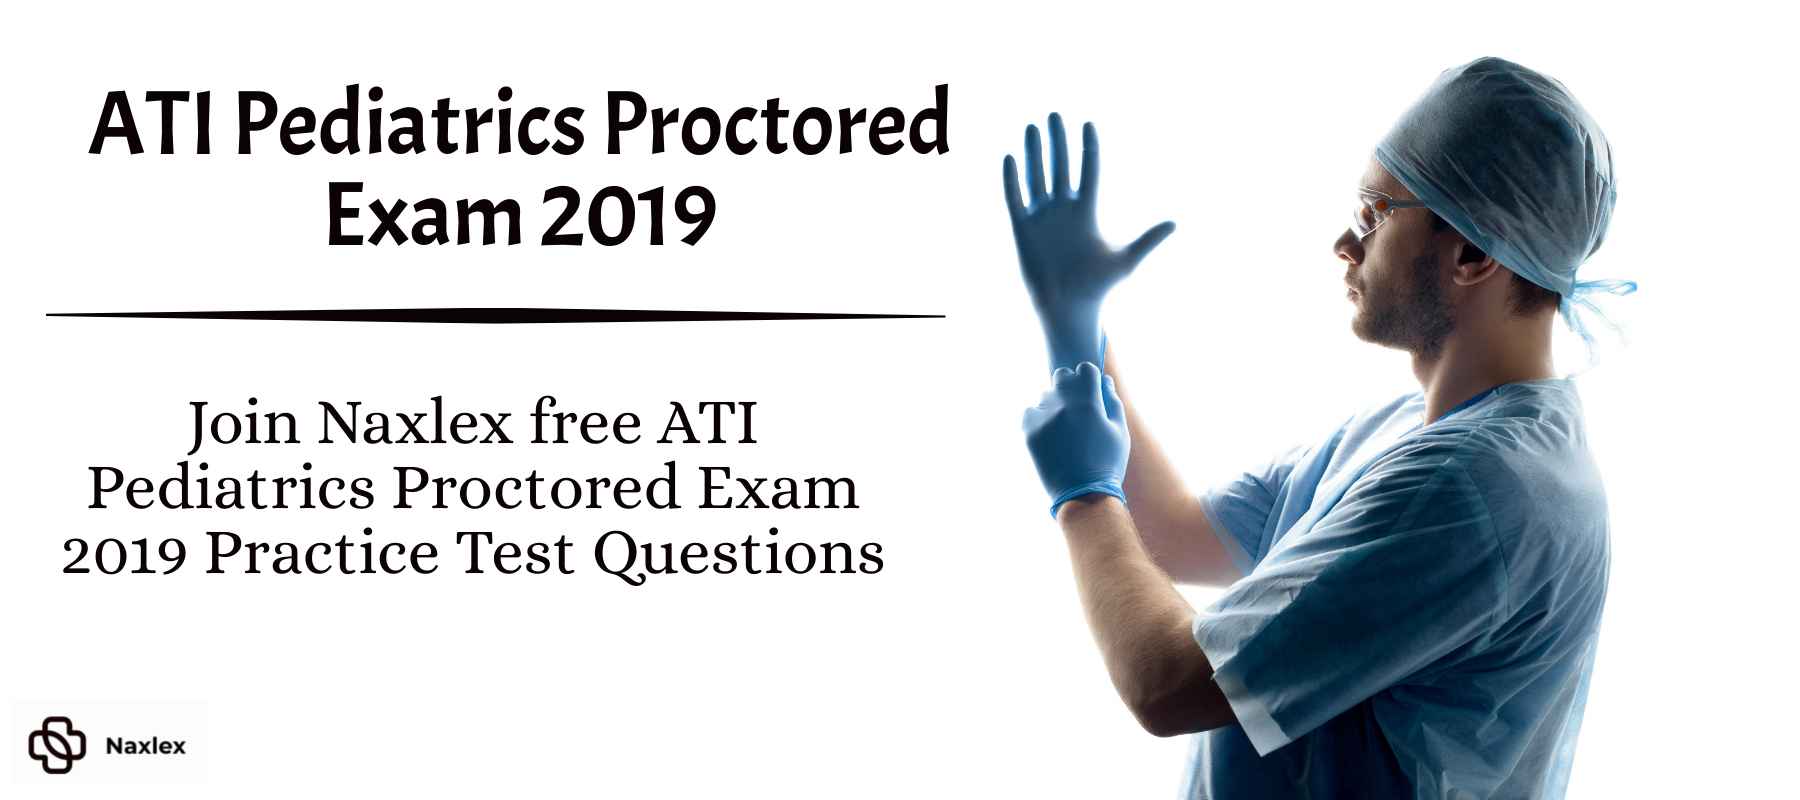 ATI Pediatrics Proctored Exam